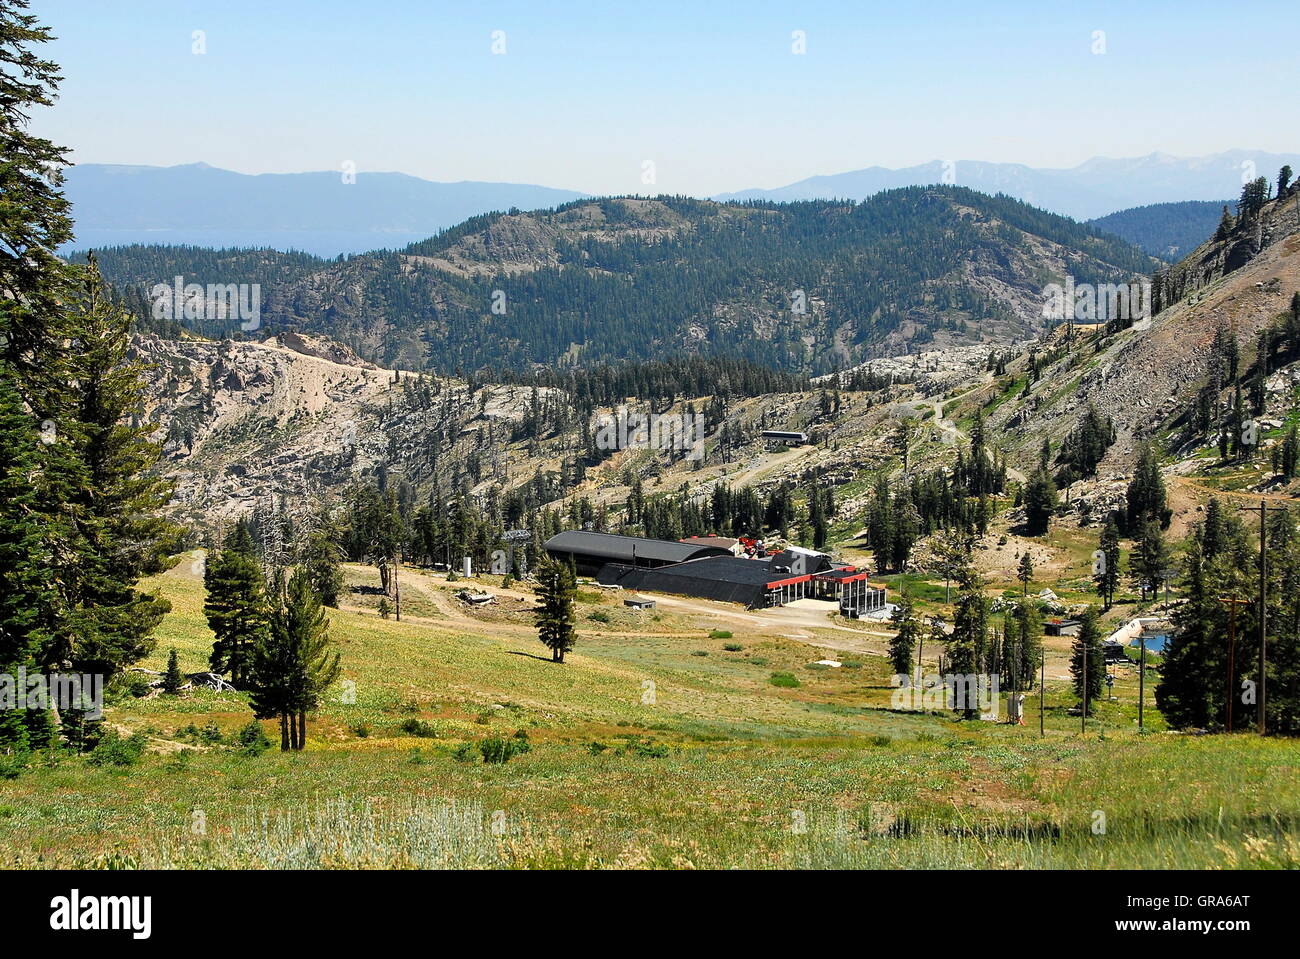 Wandern im Sommer in Squaw Valley Ski Resort bei Olympic Valley, Kalifornien. Ansicht der Hochlager und KT-22 Stockfoto